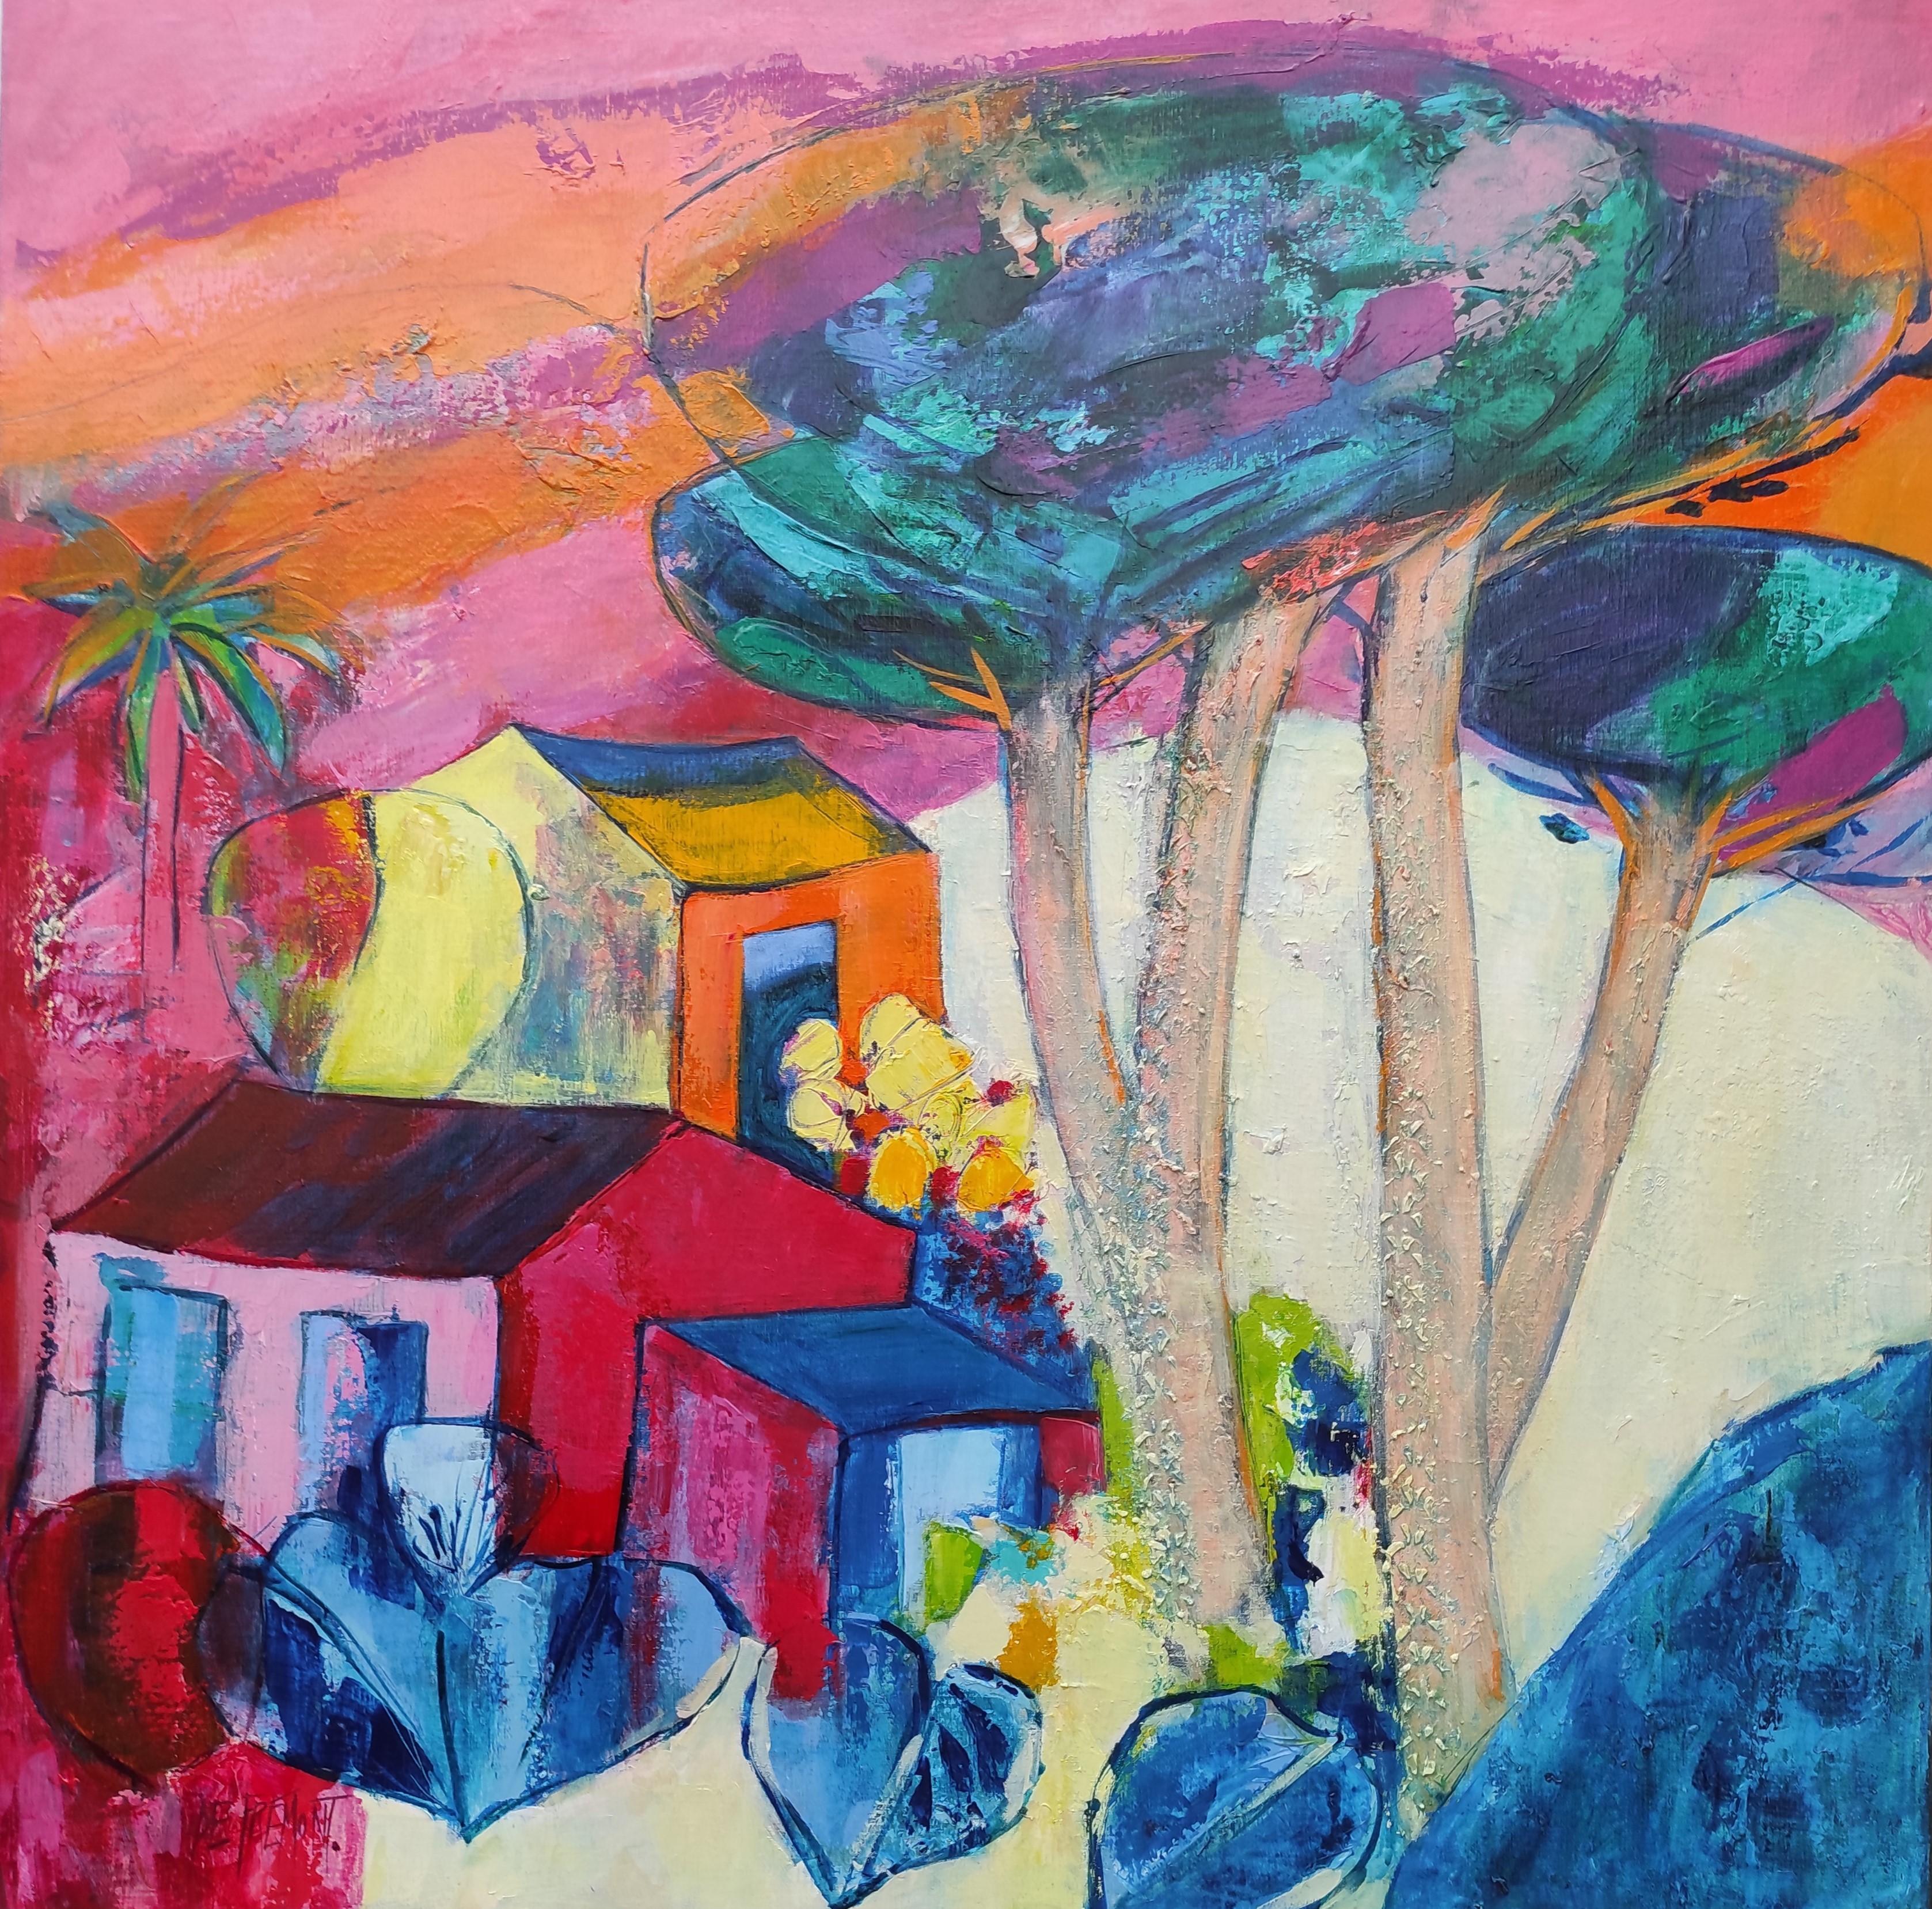 Abstract Painting Andrée de Frémont - « Sous l'abat-jour de grand pin », peinture de paysage abstrait rose et orange 